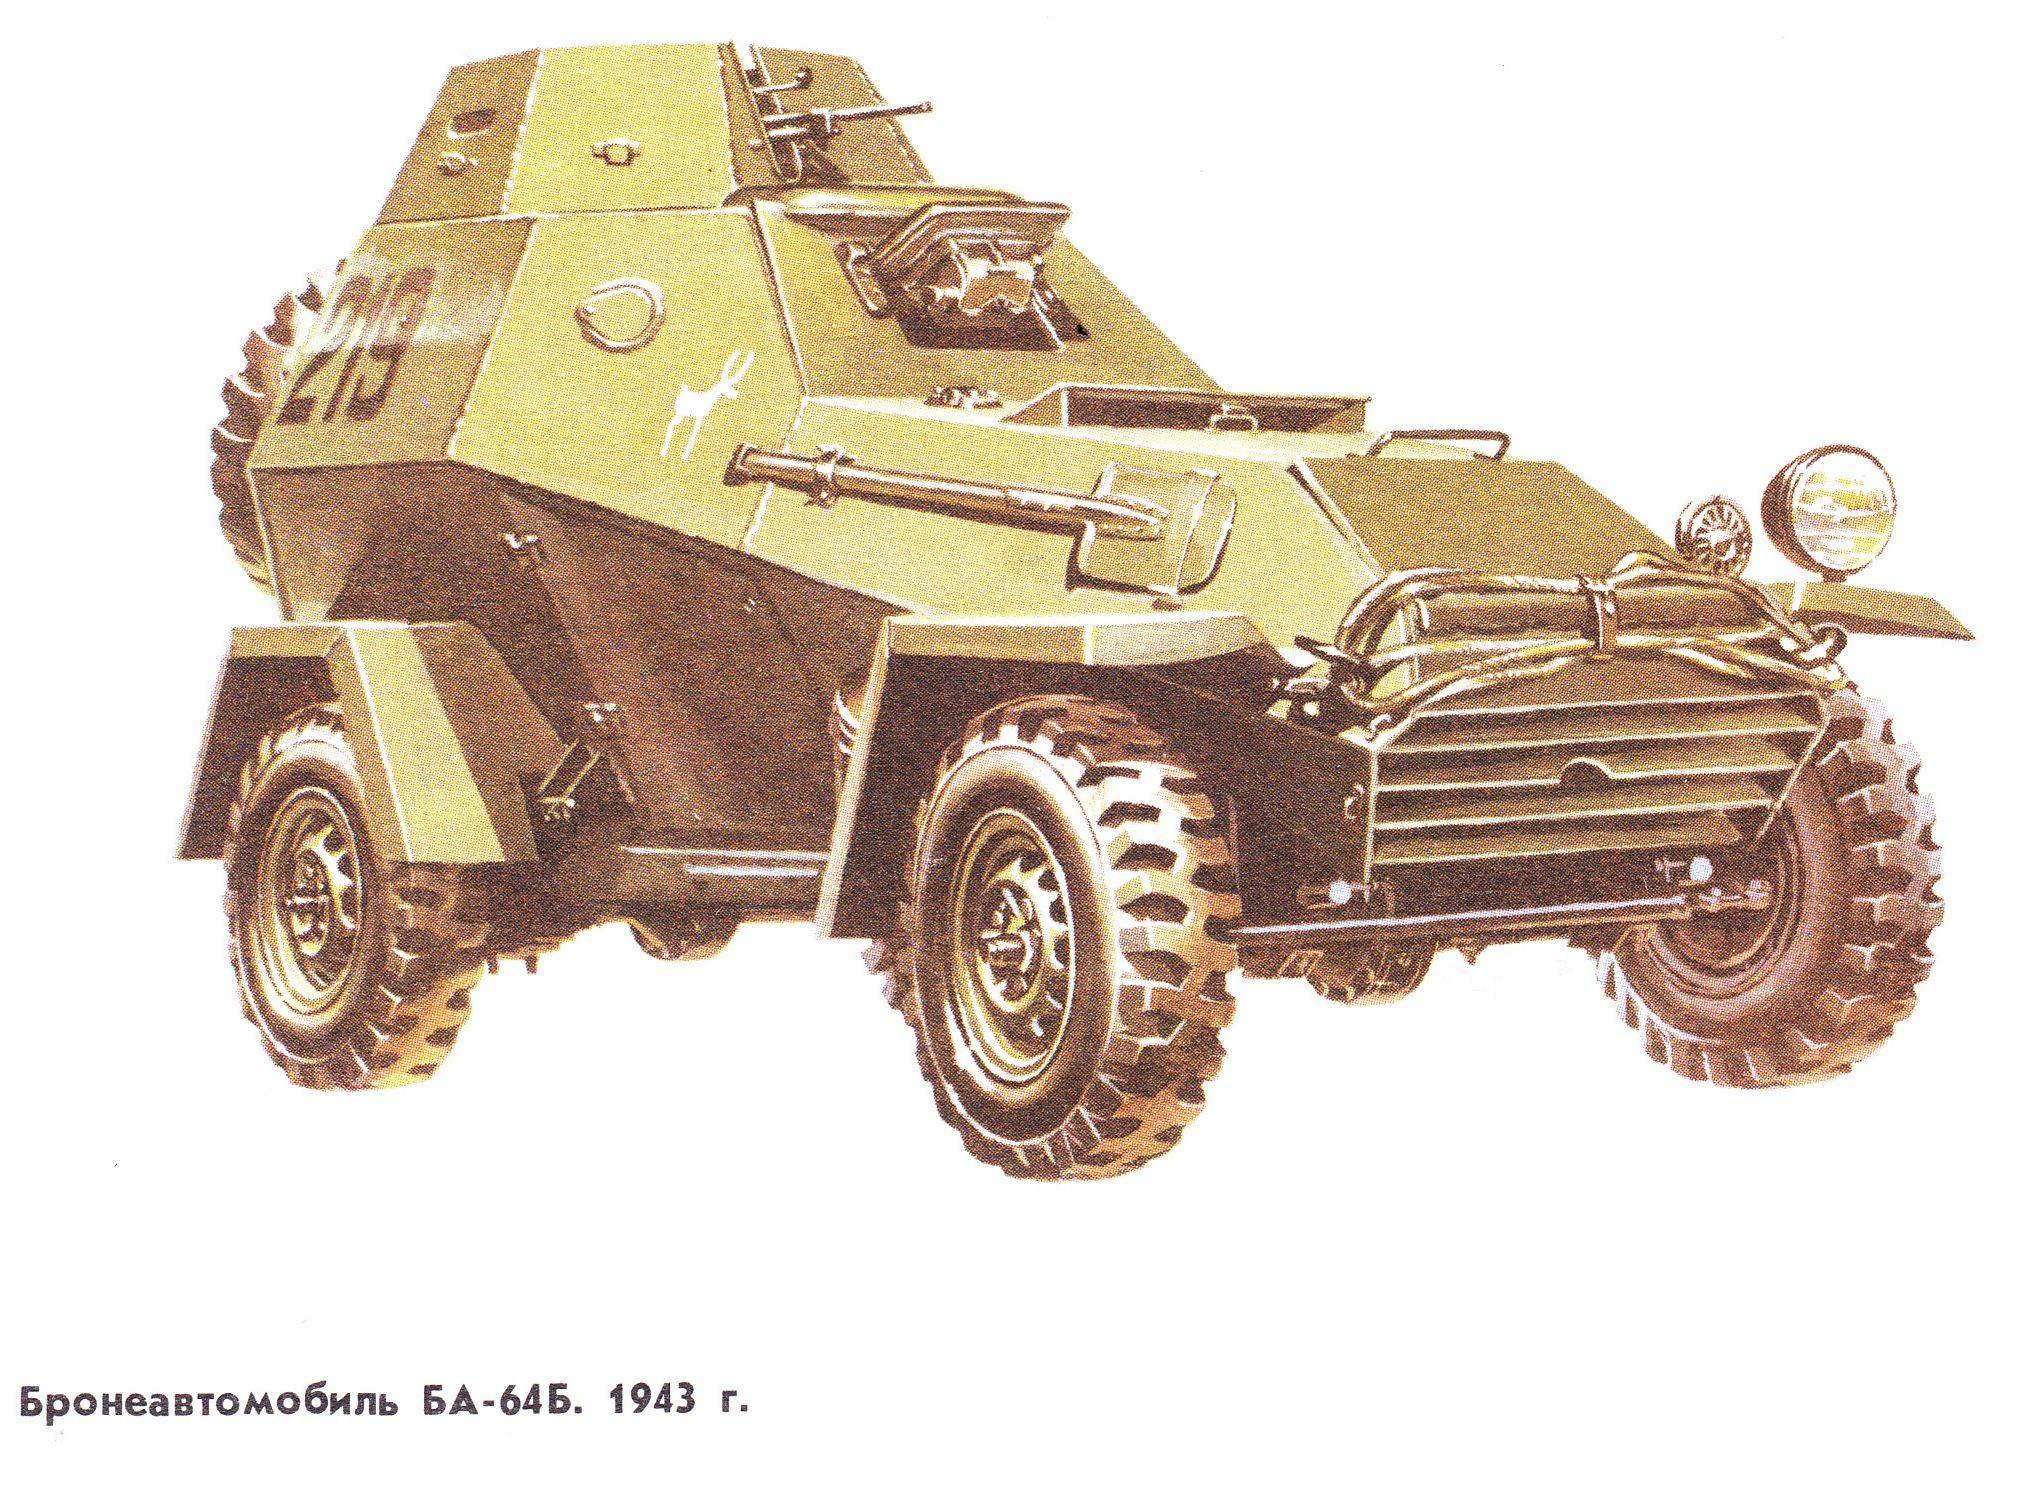 Ба-64 ???? описание бронеавтомобиля, машины войны